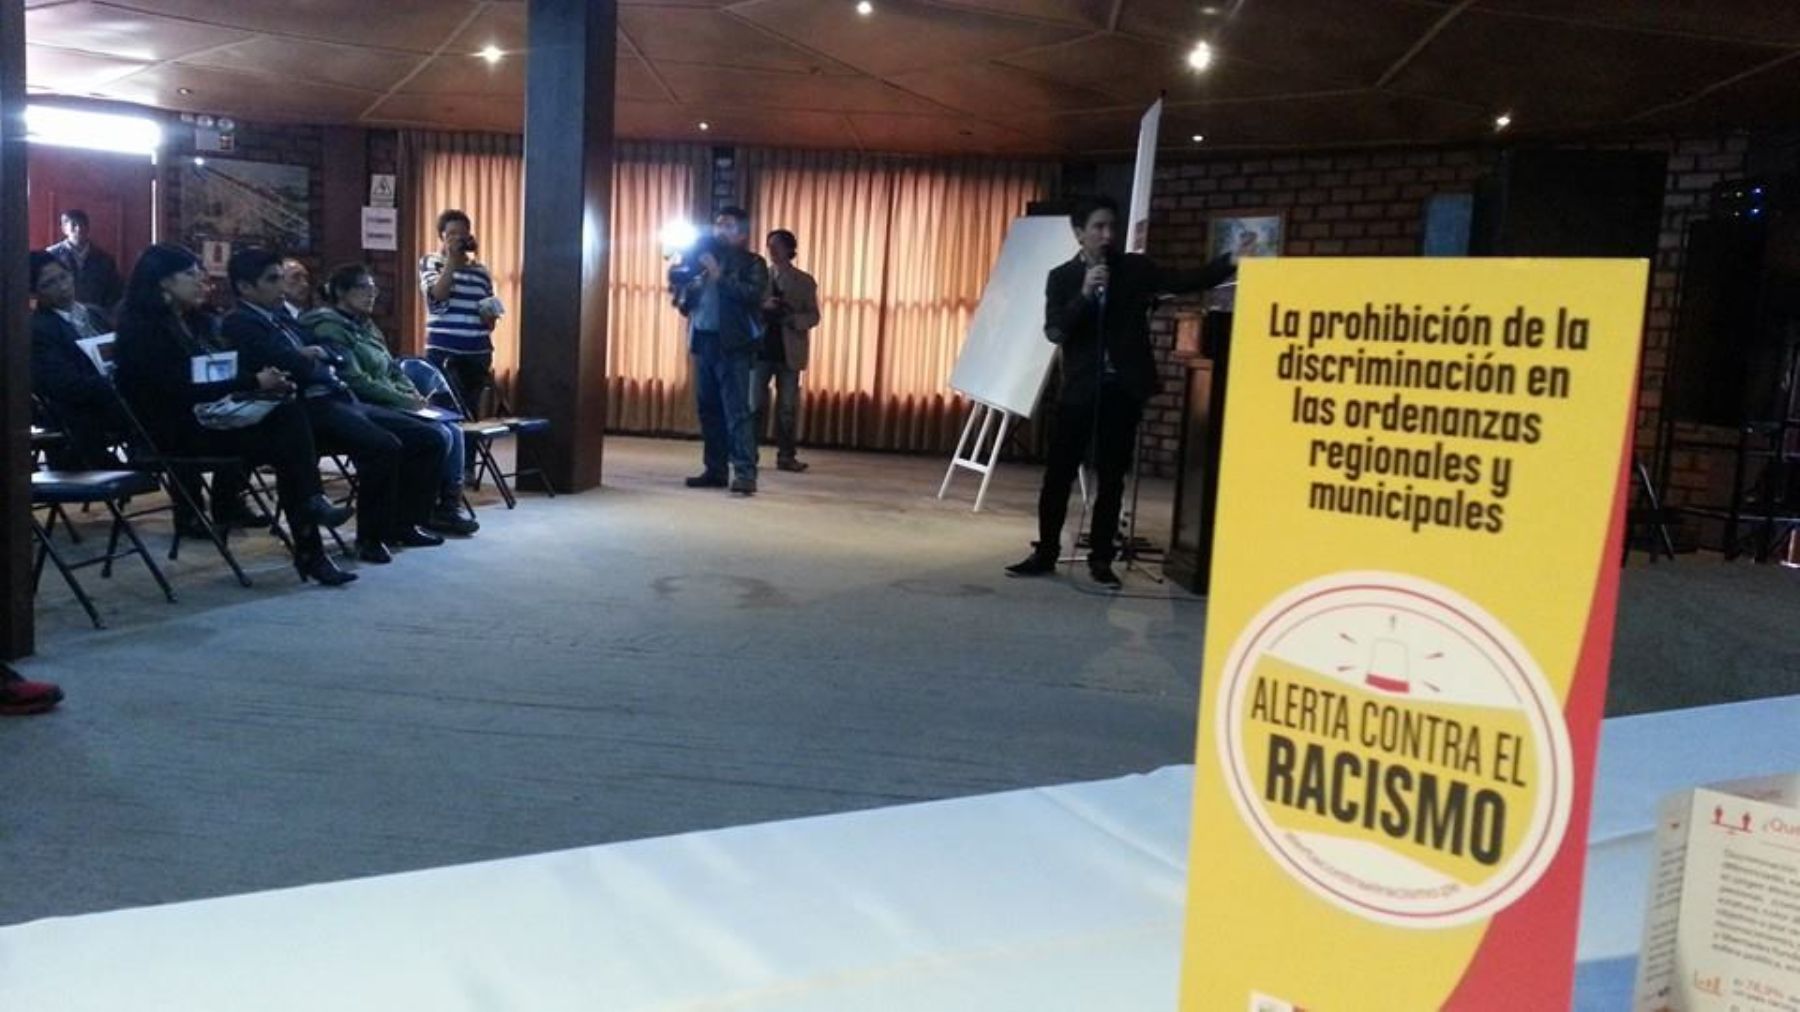 Lanzan en Huancayo "alerta contra el racismo".